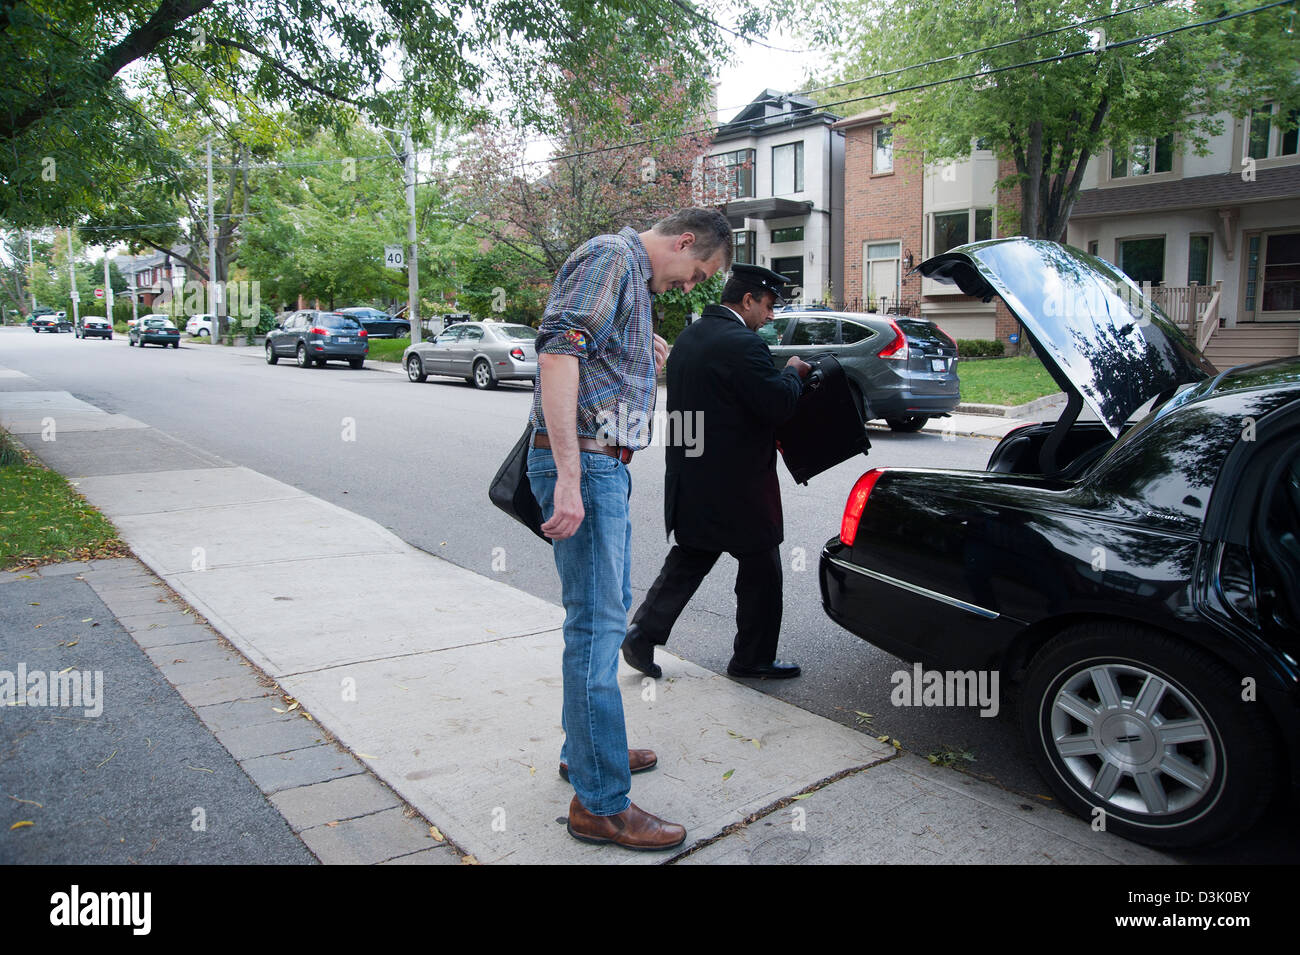 Ein Mann wartet auf Bürgersteig während uniformierten Chauffeur bringt sein Gepäck im Kofferraum des Autos Stockfoto